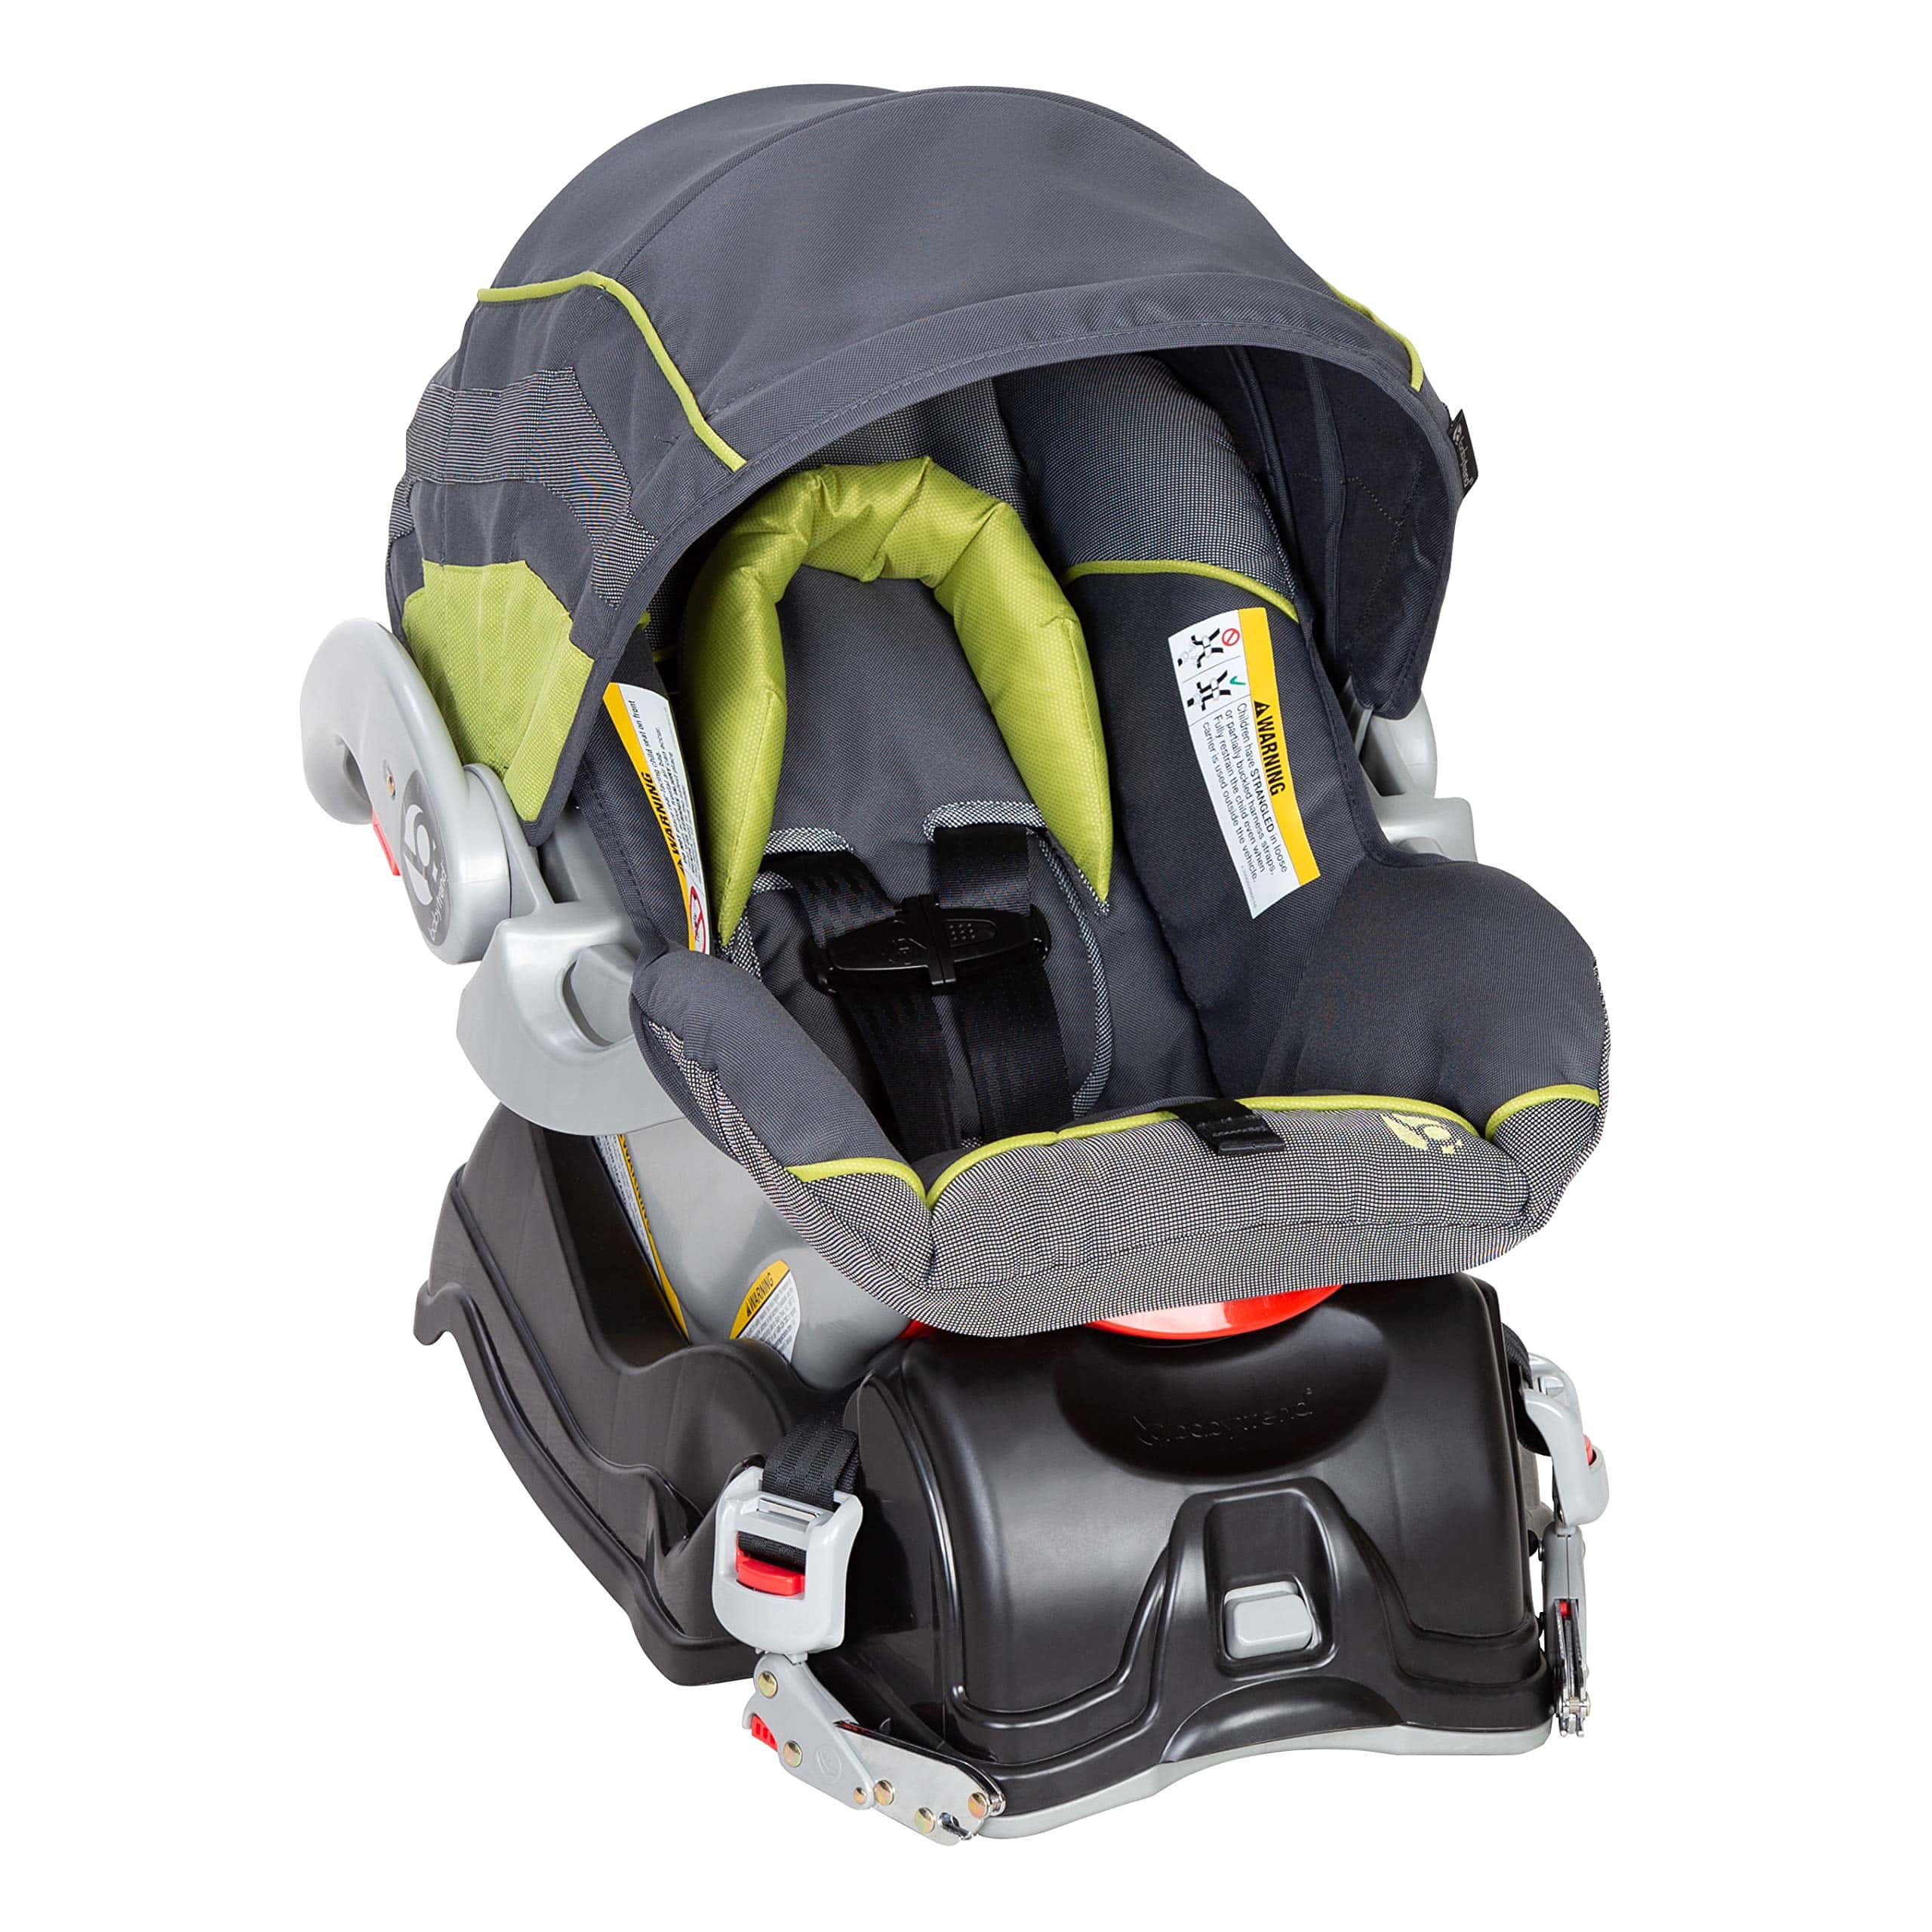 Baby Trend EZ Flex Loc Infant Car Seat, Carbon